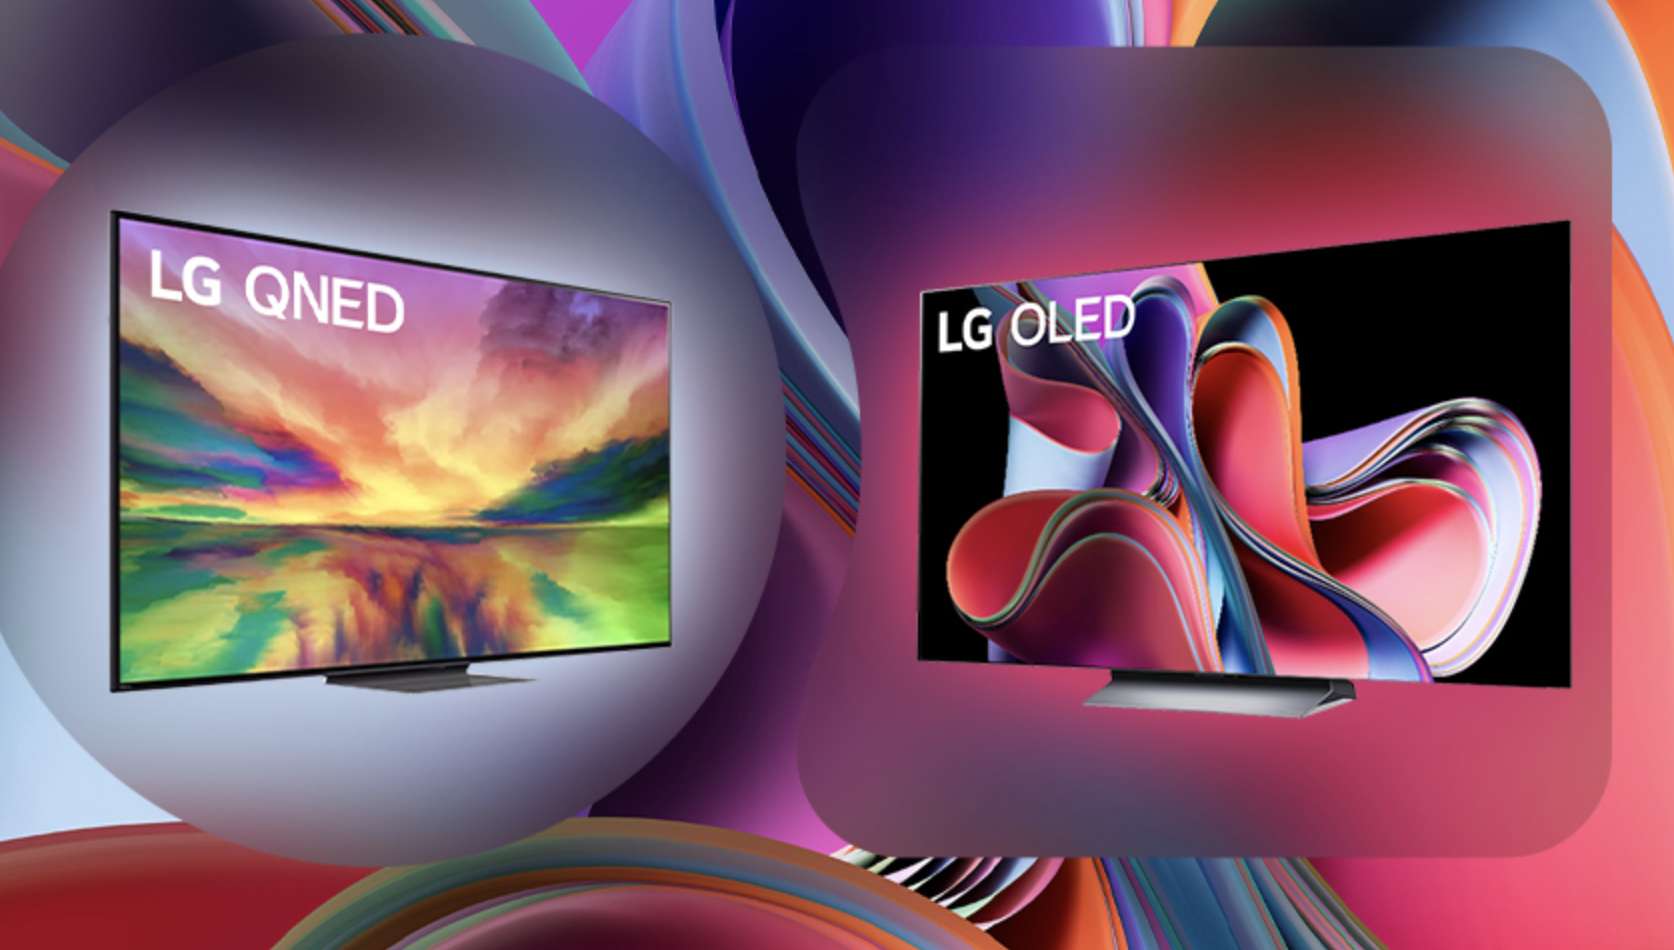 Kup telewizor LG OLED lub QNED i zgarnij do… 3000 zł zwrotu na konto! Fantastyczna promocja